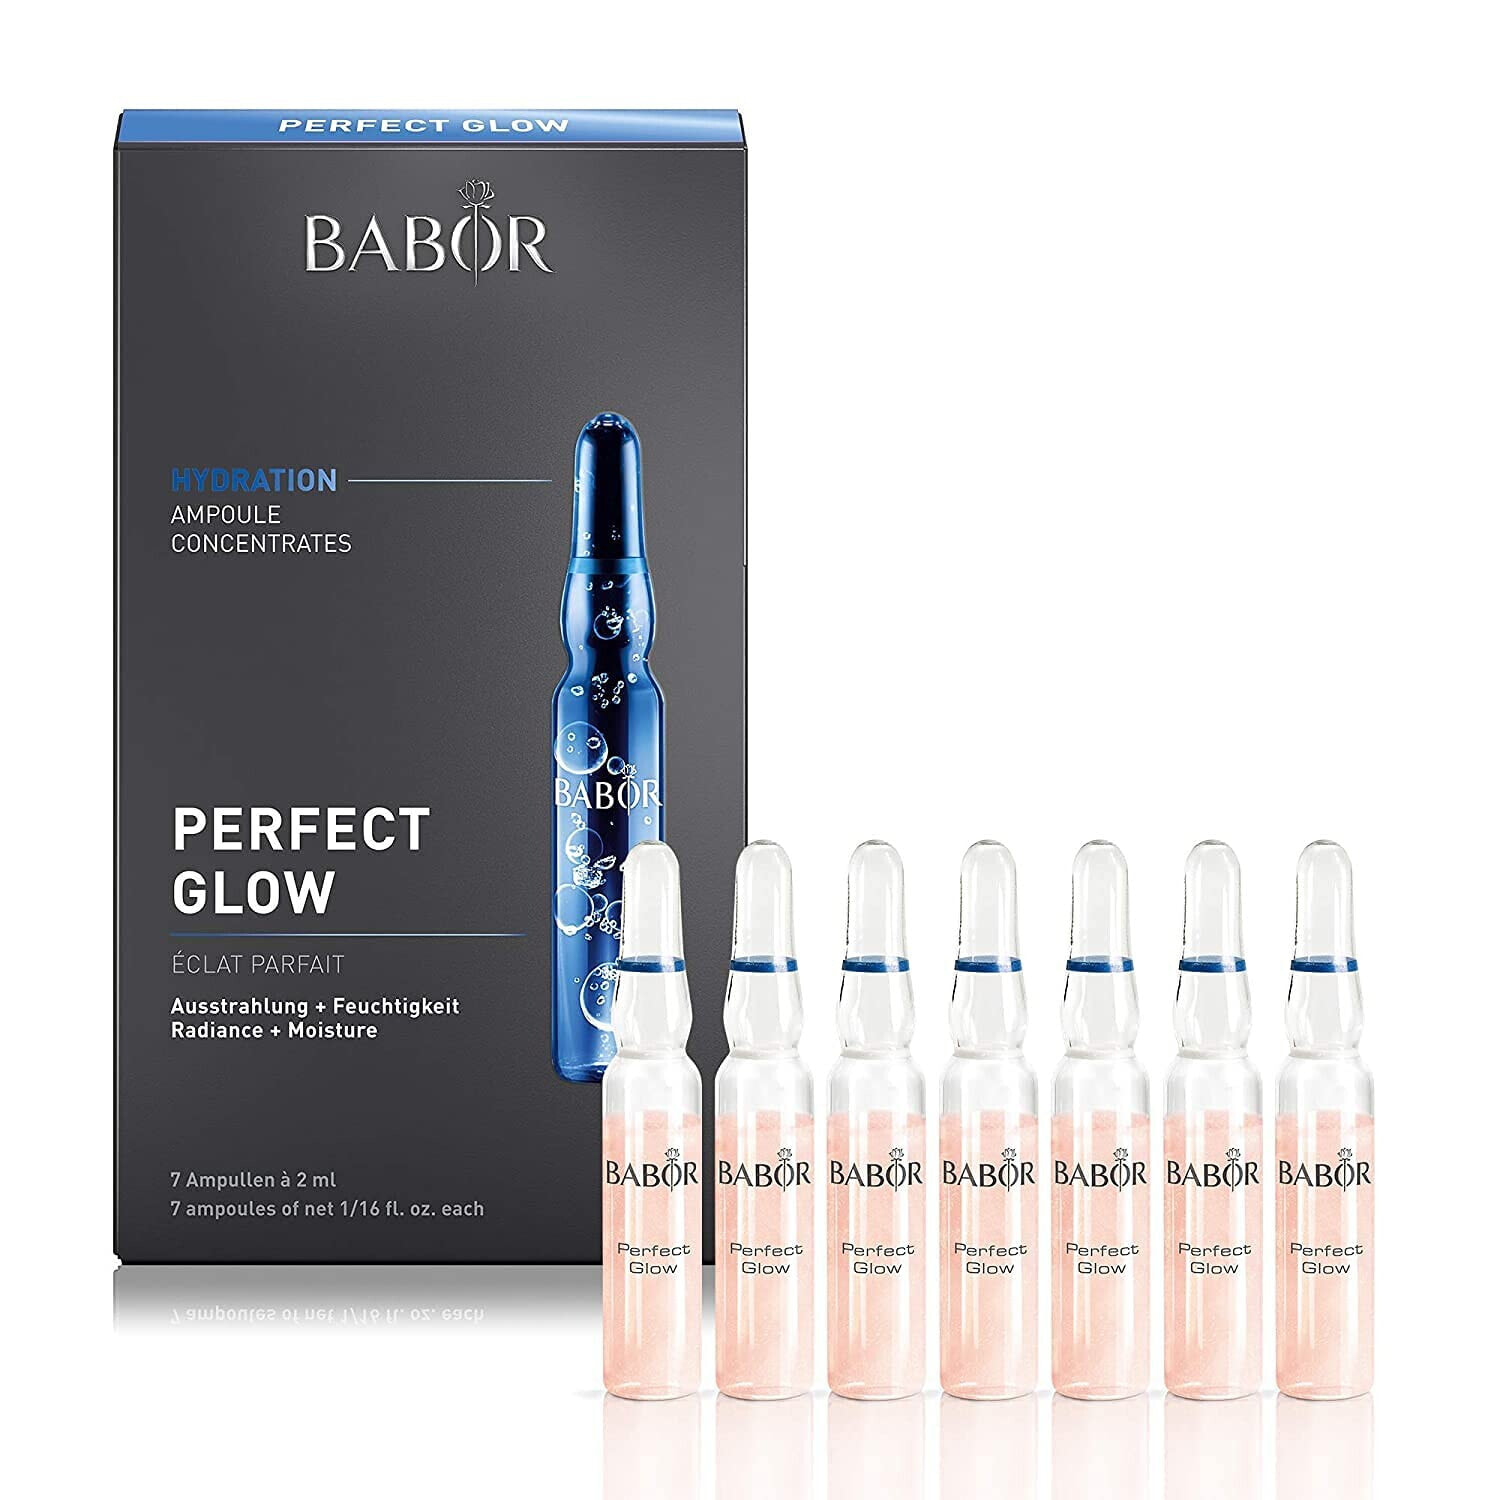 BABOR Perfect Glow, Serum Ampullen für das Gesicht, Mit Glow Pigmenten für einen strahlenden Teint, Vegane Formel, Ampoule Concentrates, 7 x 2 ml